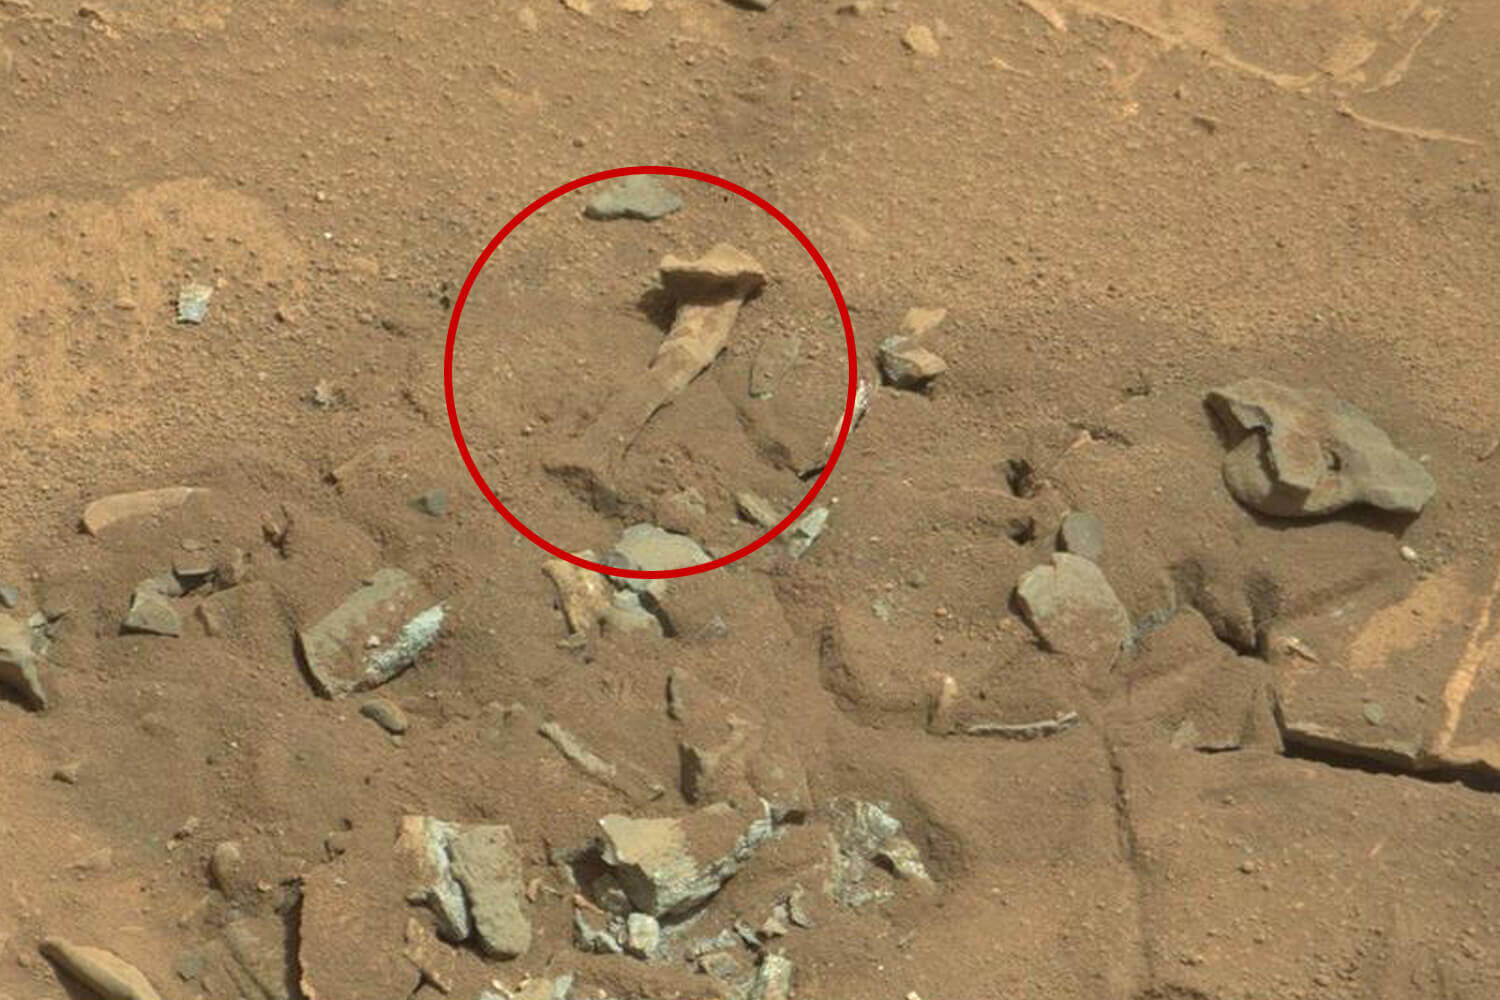 Sur la surface de Mars sont les «ossements humains» et d'autres objets — ce que c'est?